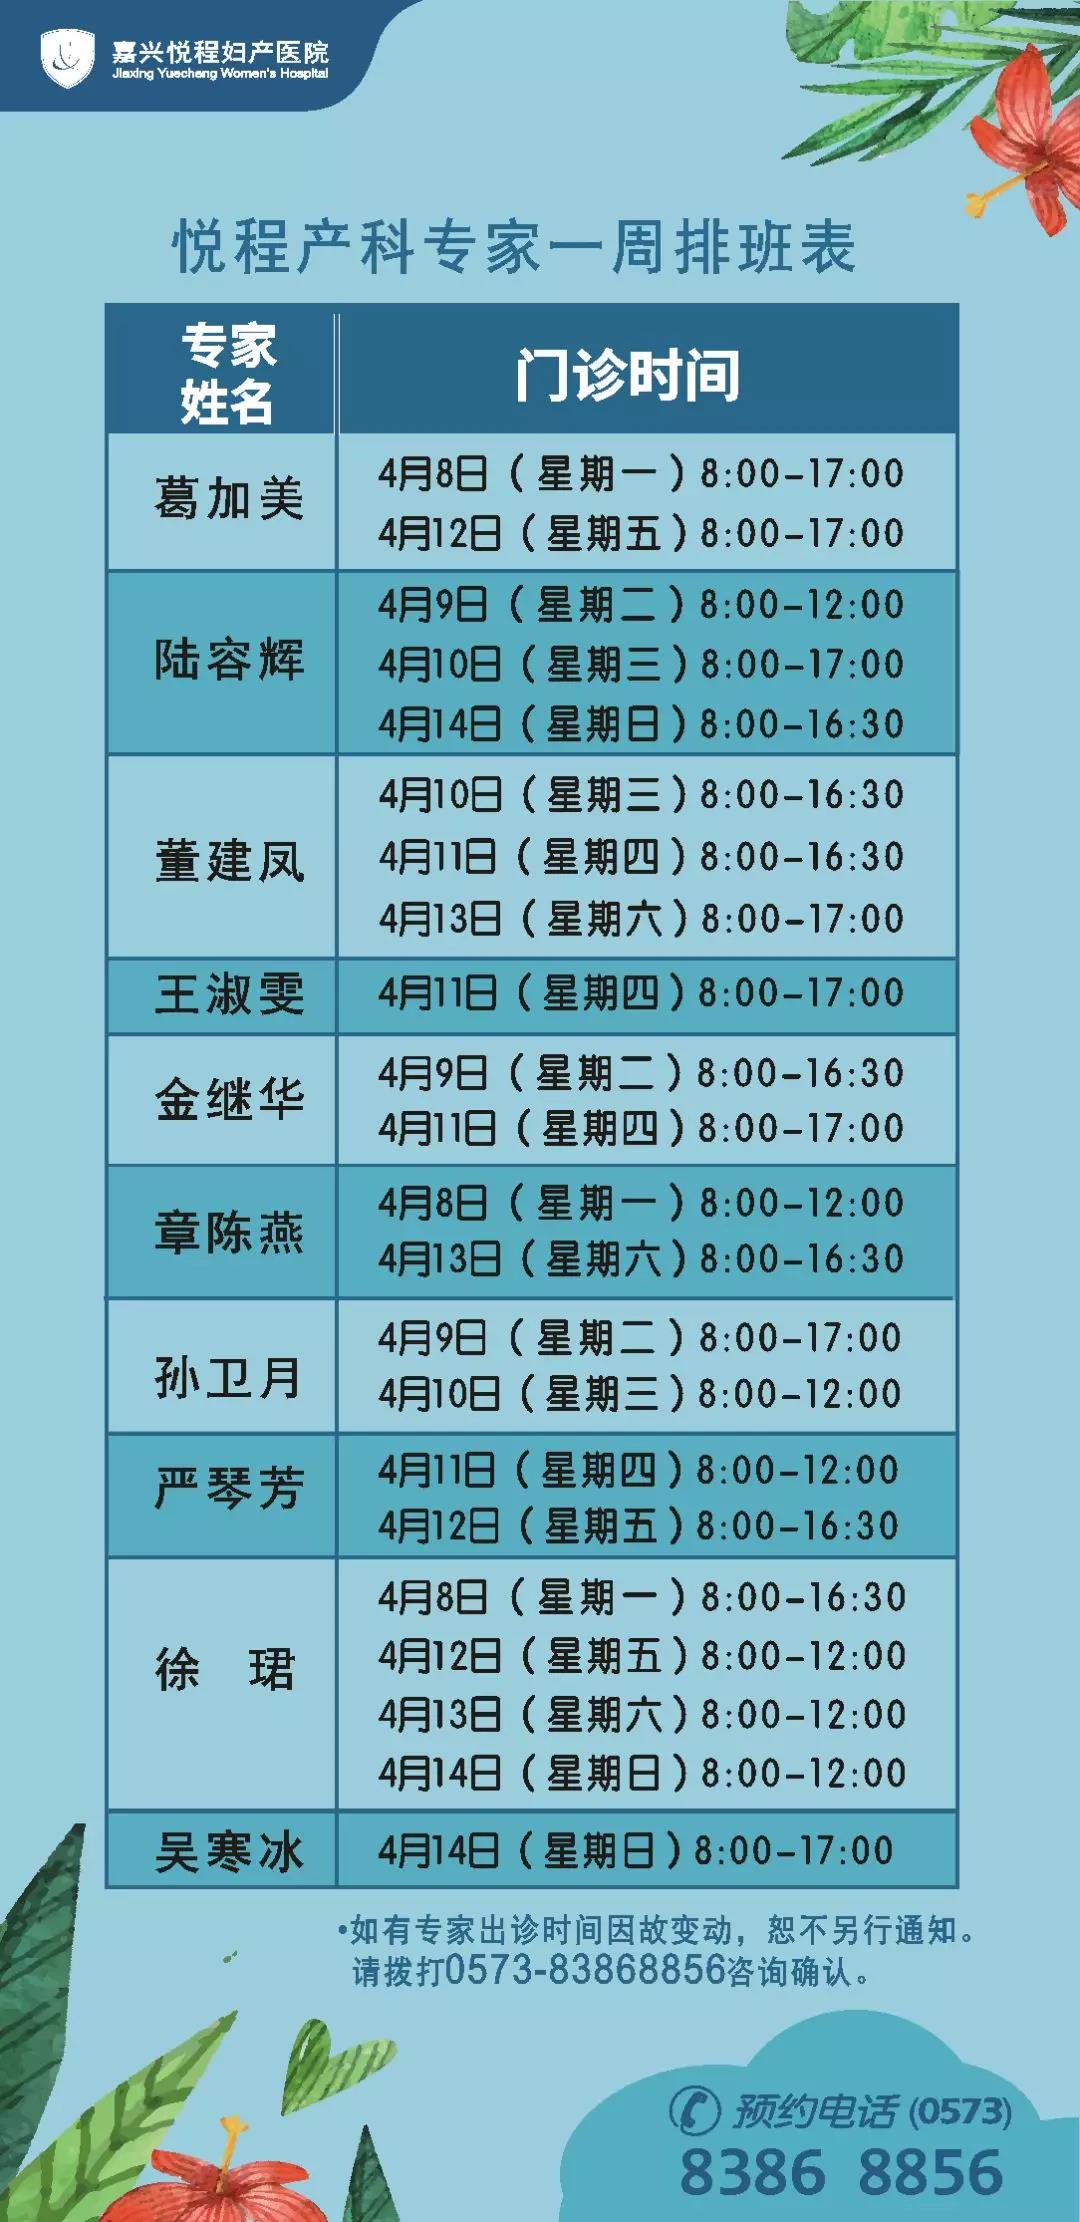 嘉兴悦程产科专家4月8日—4月14日门诊时间表